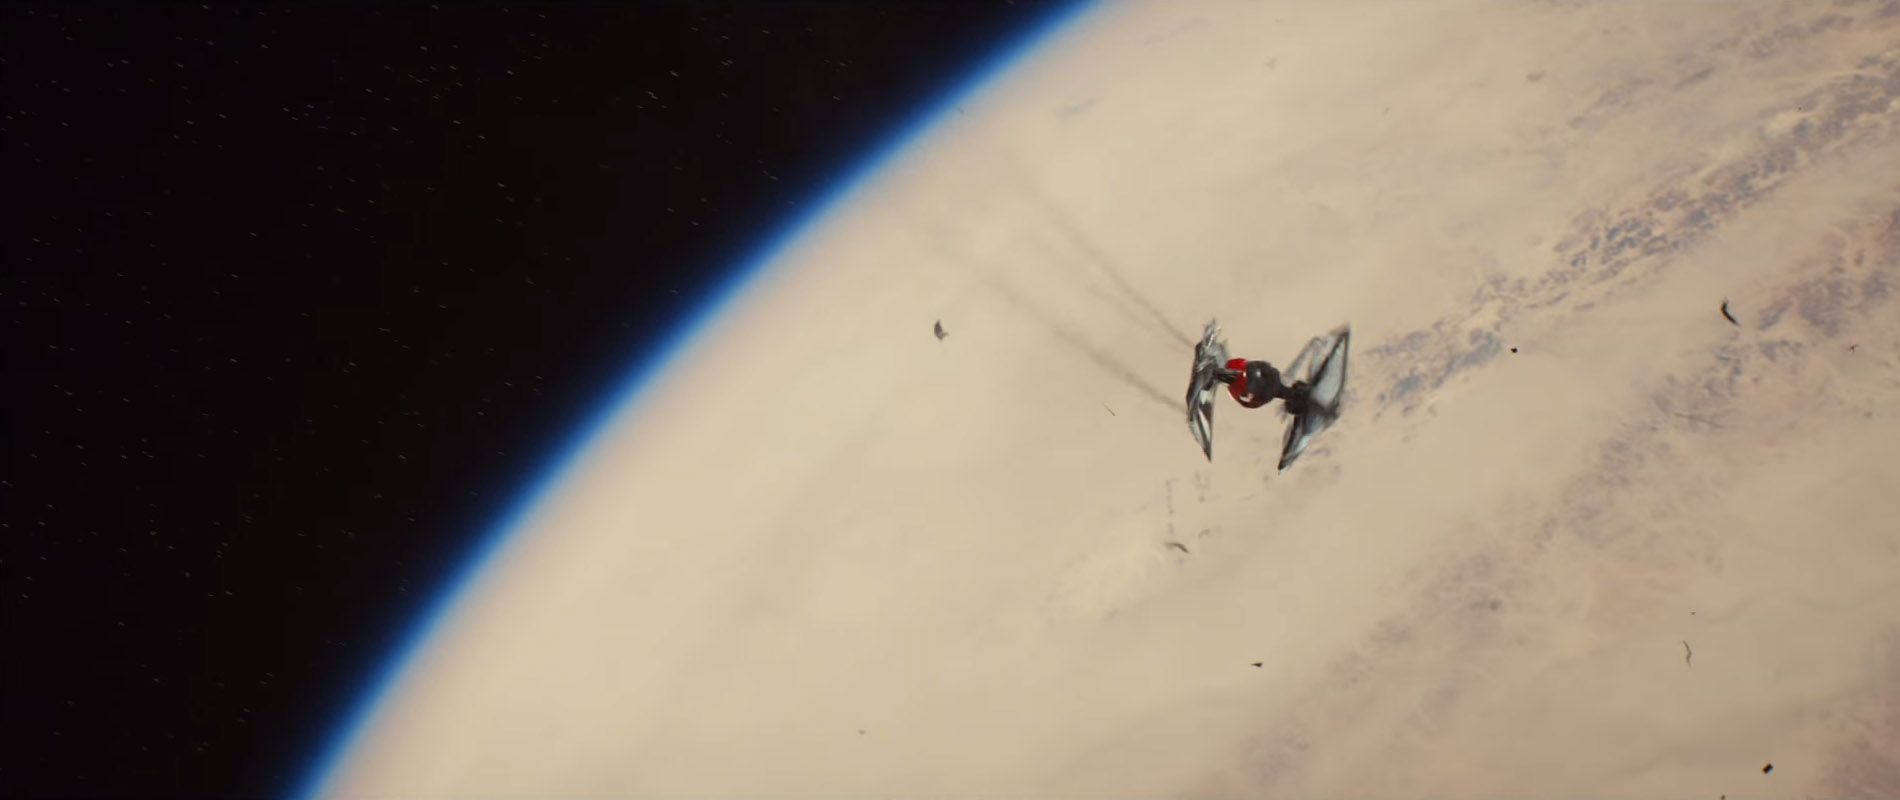 Star Wars 7 Trailer #3 - Finn Tie Fighter Crash